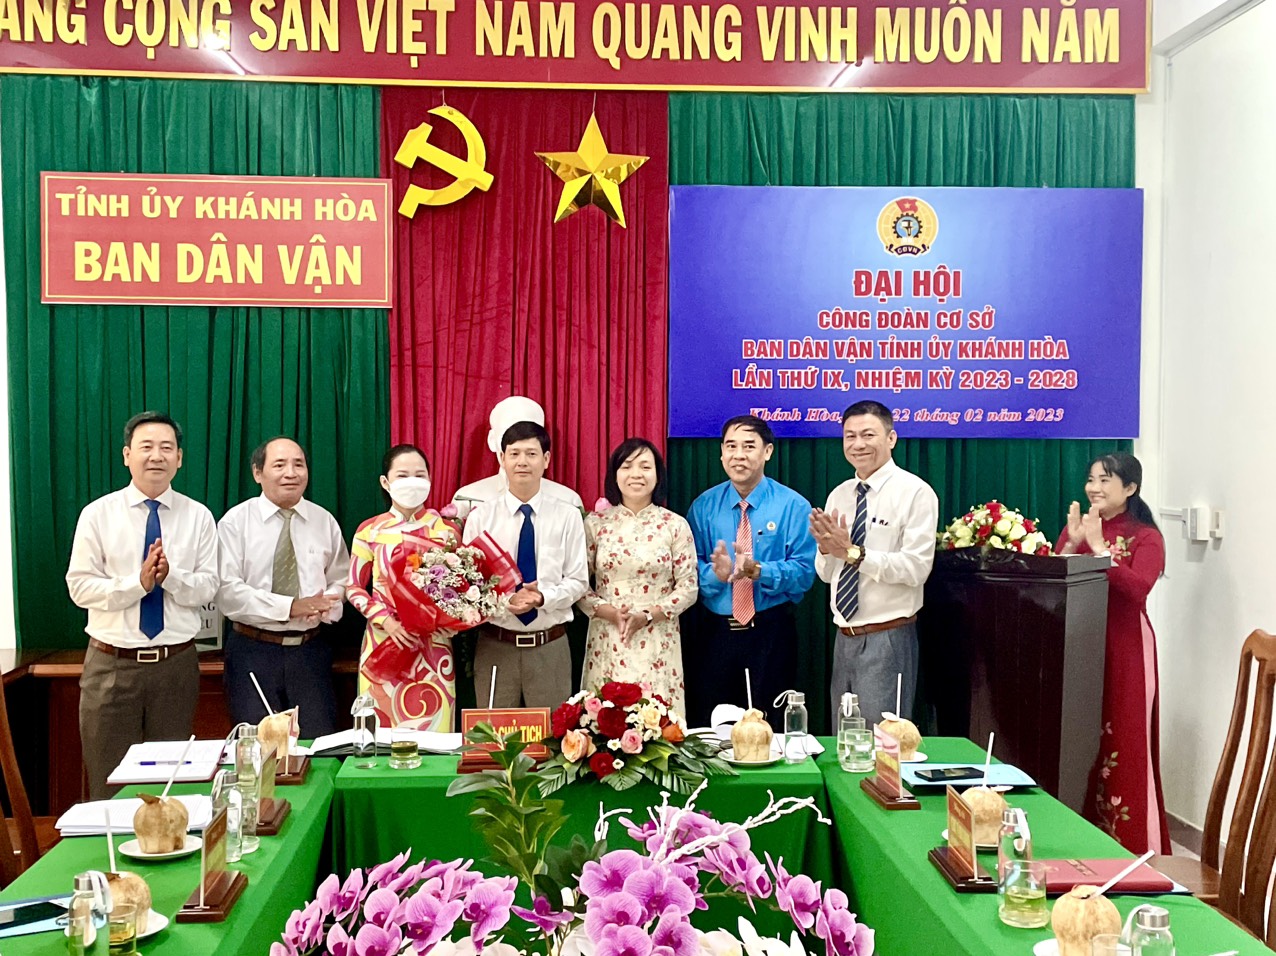 Đại hội Công đoàn cơ sở Ban Dân vận Tỉnh ủy Khánh Hòa